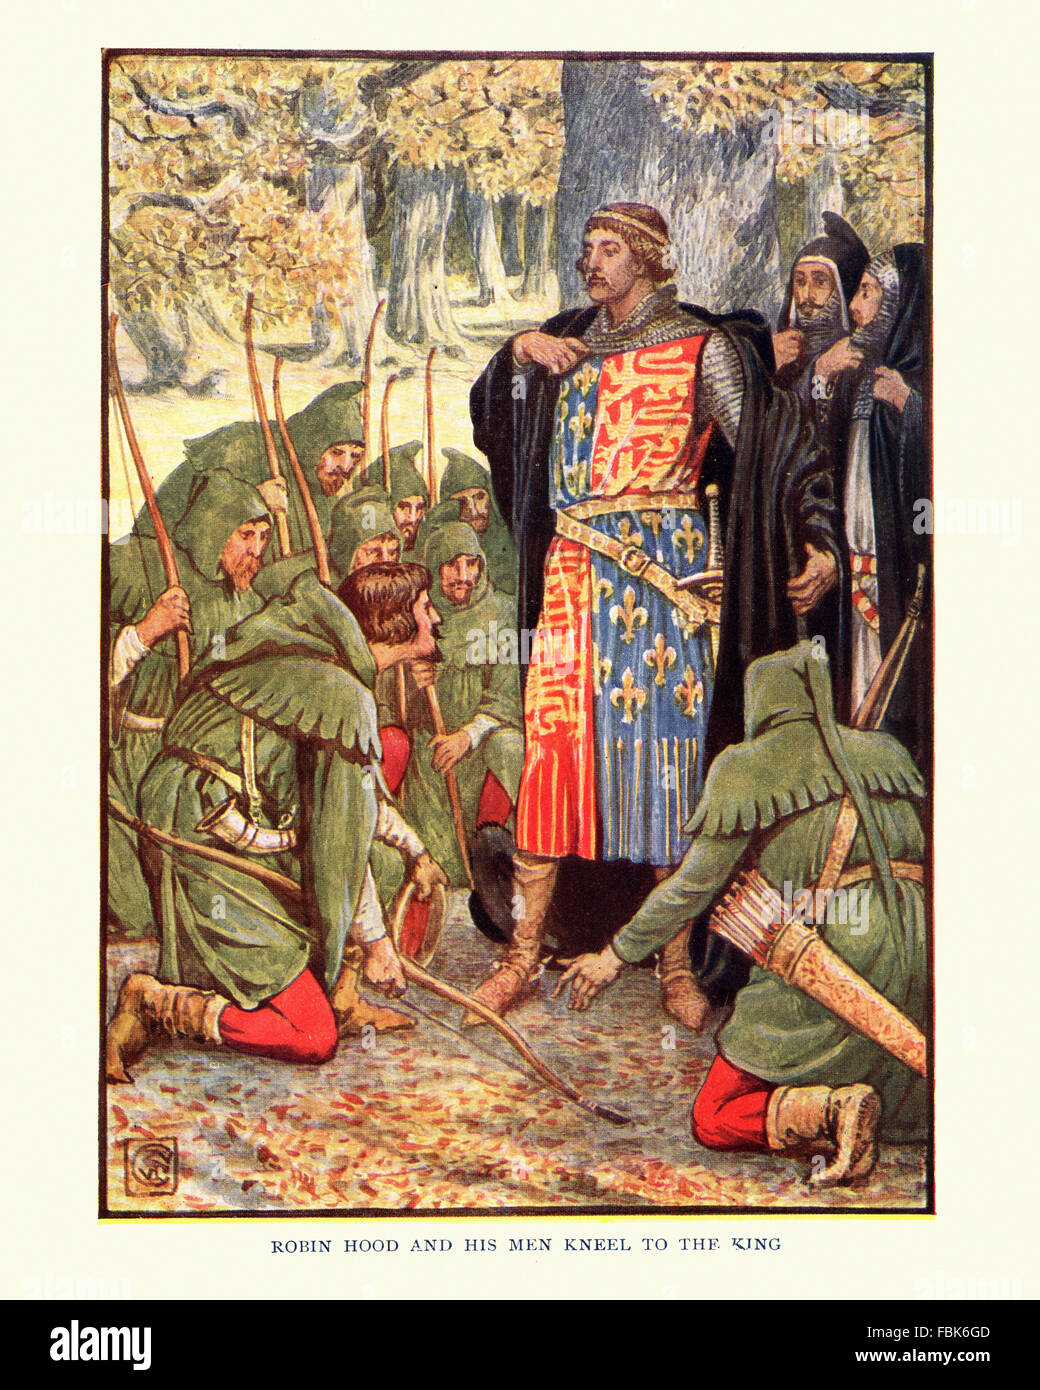 Abbildung aus der Geschichte von Robin Hood. Robin Hood und seine Männer knien vor König Richard Löwenherz. Von Walter Crane Stockfoto